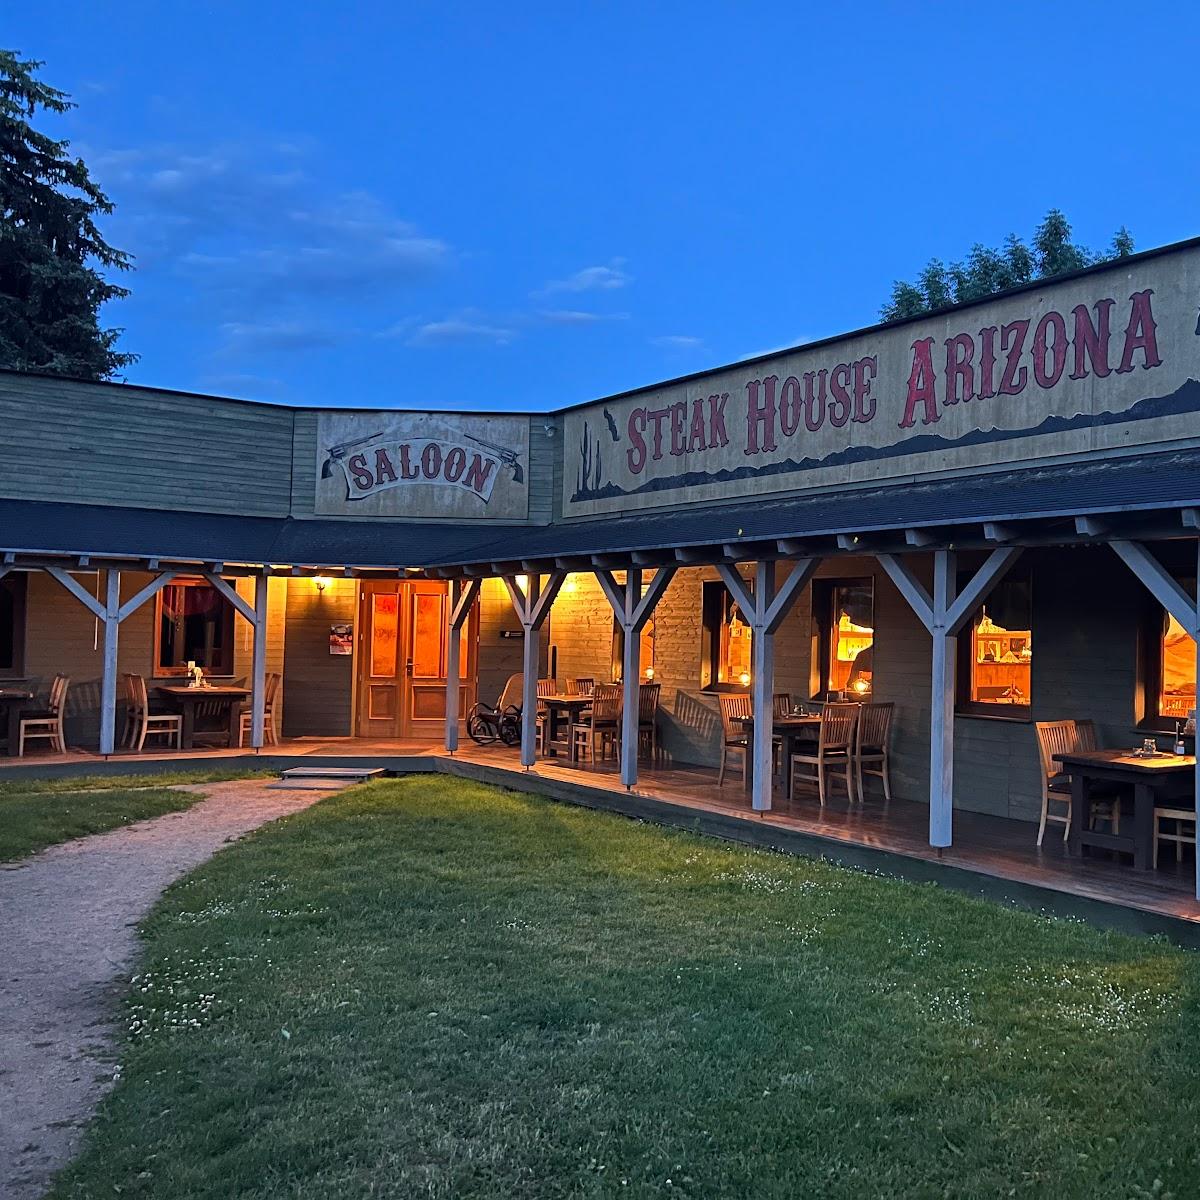 Restaurant "Steak House Arizona" in Wurzen